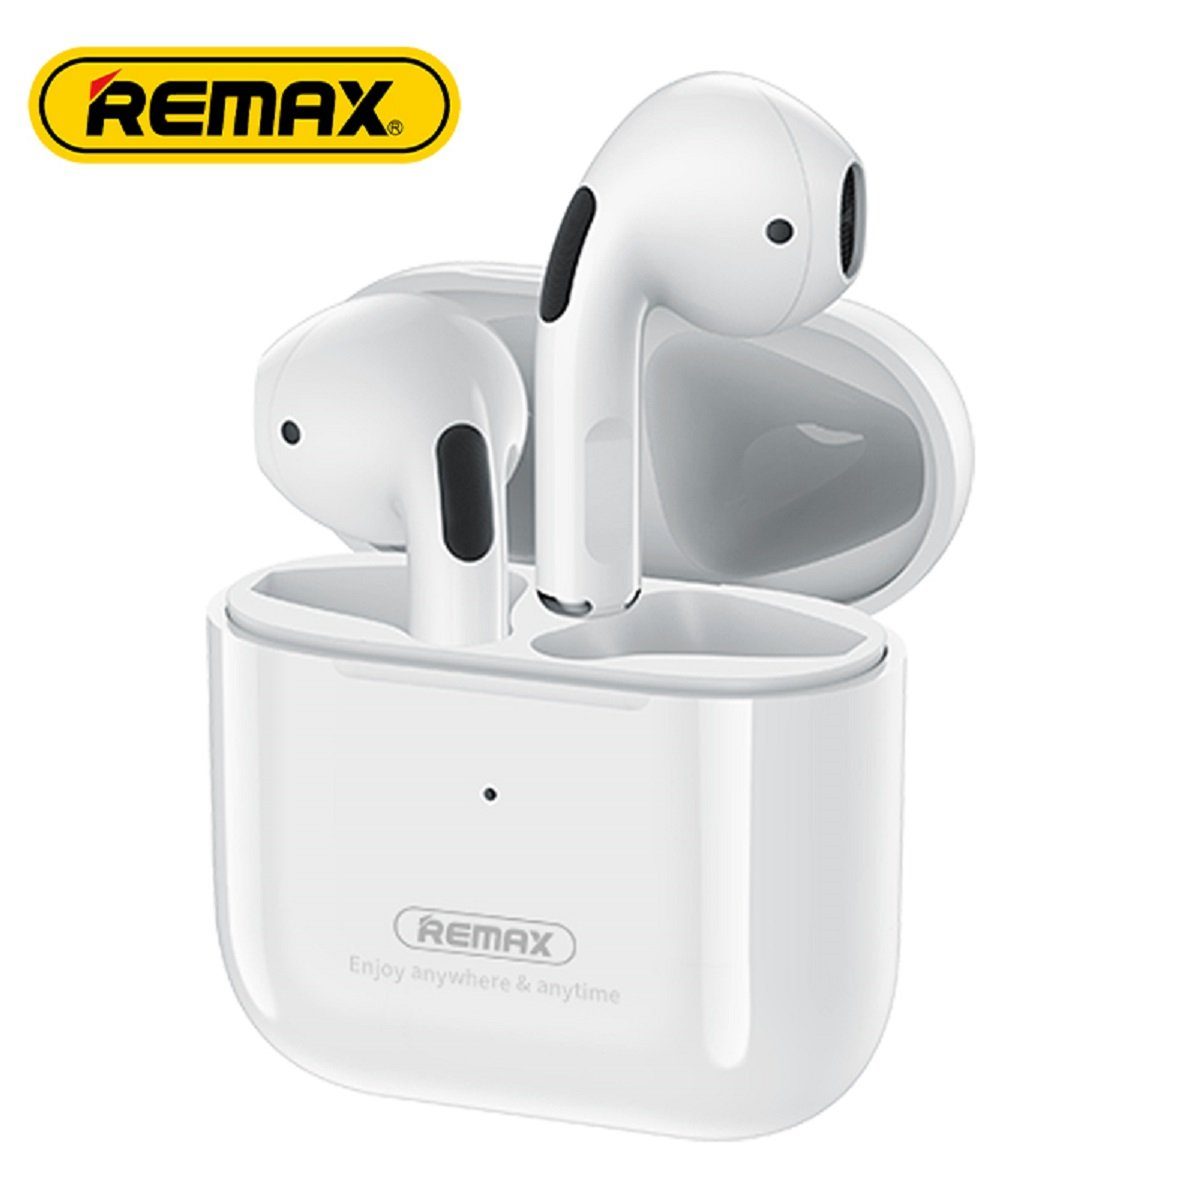 Remax TWS-10i 5.0 Навушники True Wireless mit Ladecase für Smartphone (Weiß) Bluetooth-Kopfhörer (Wireless, True Wireless, TWS, bluetooth, wasserdicht, Aktive Geräuschunterdrückung)